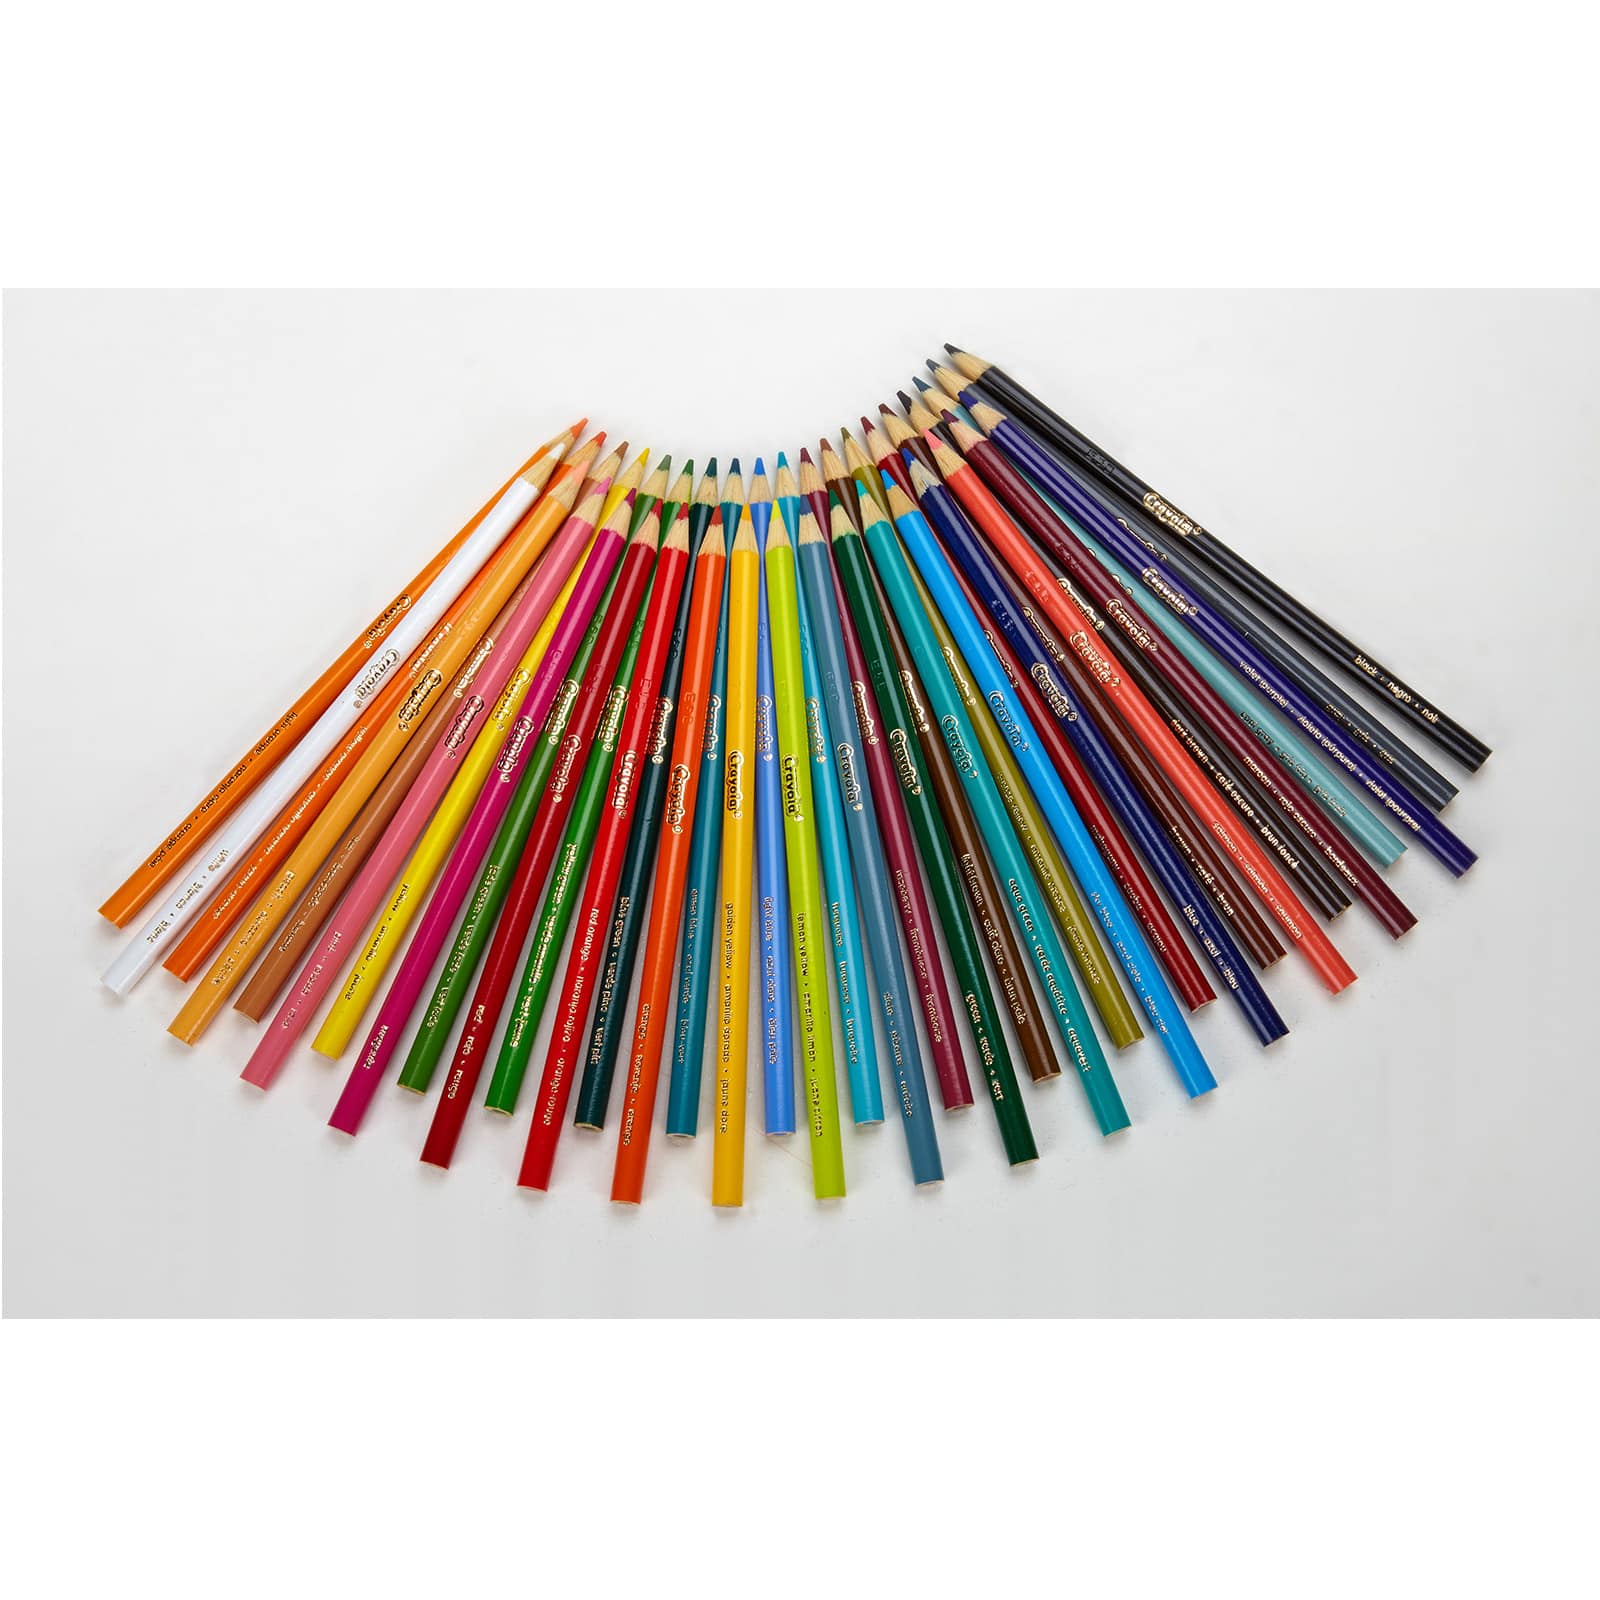 Crayola® Colored Pencils (12 count)